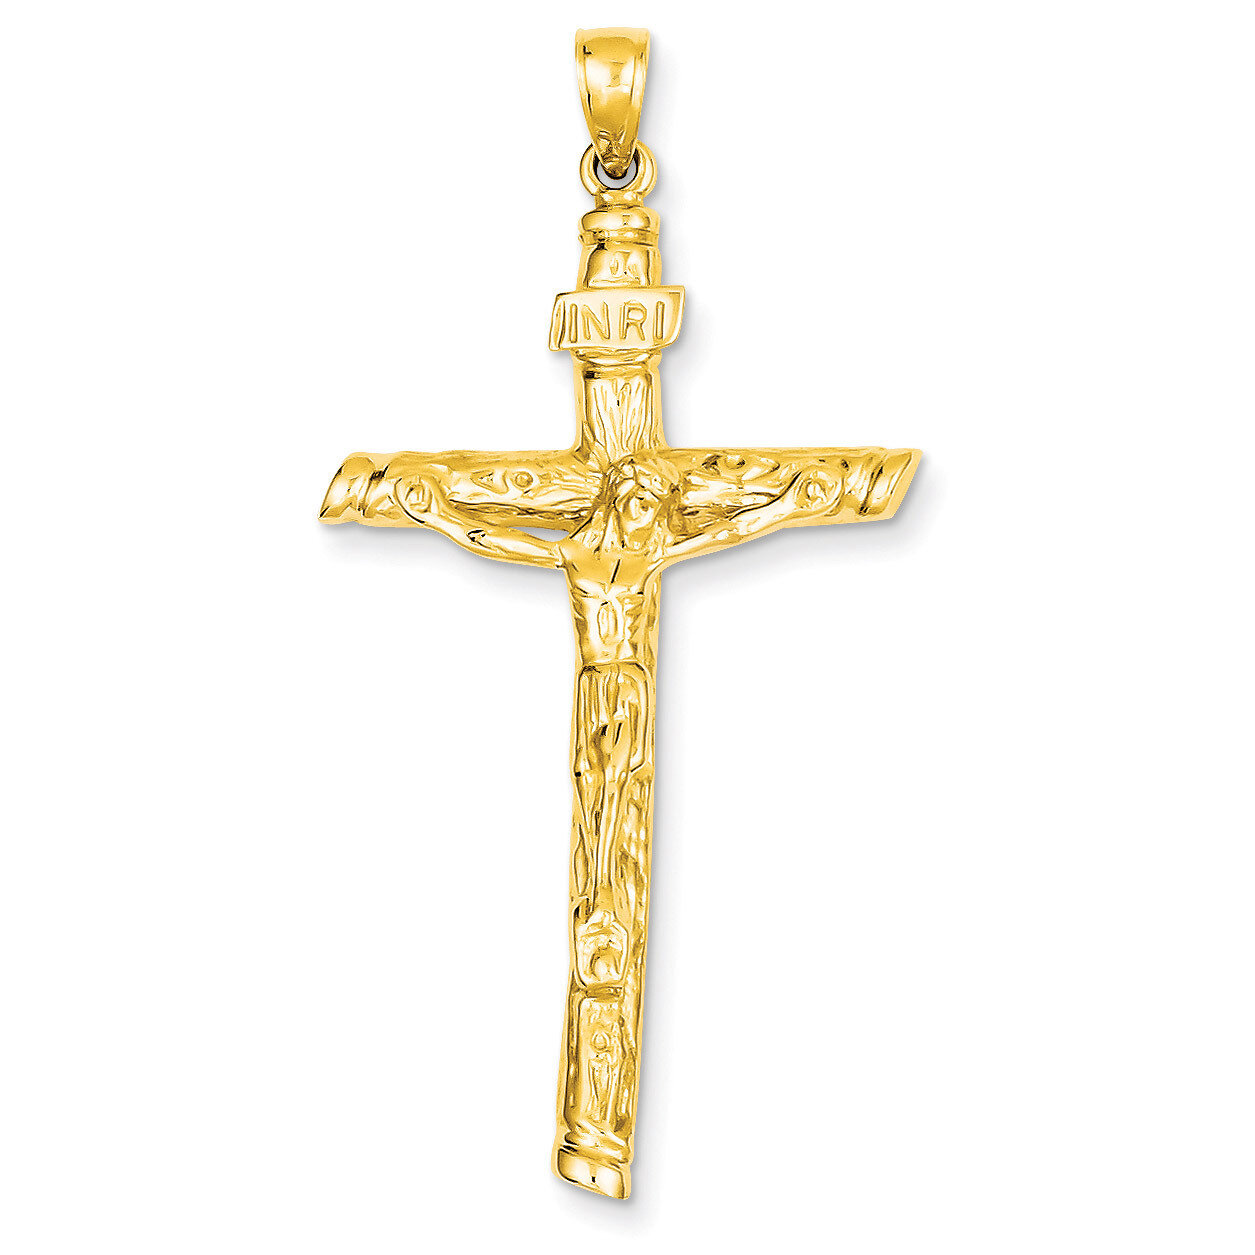 INRI Crucifix Pendant 14k Gold K5061